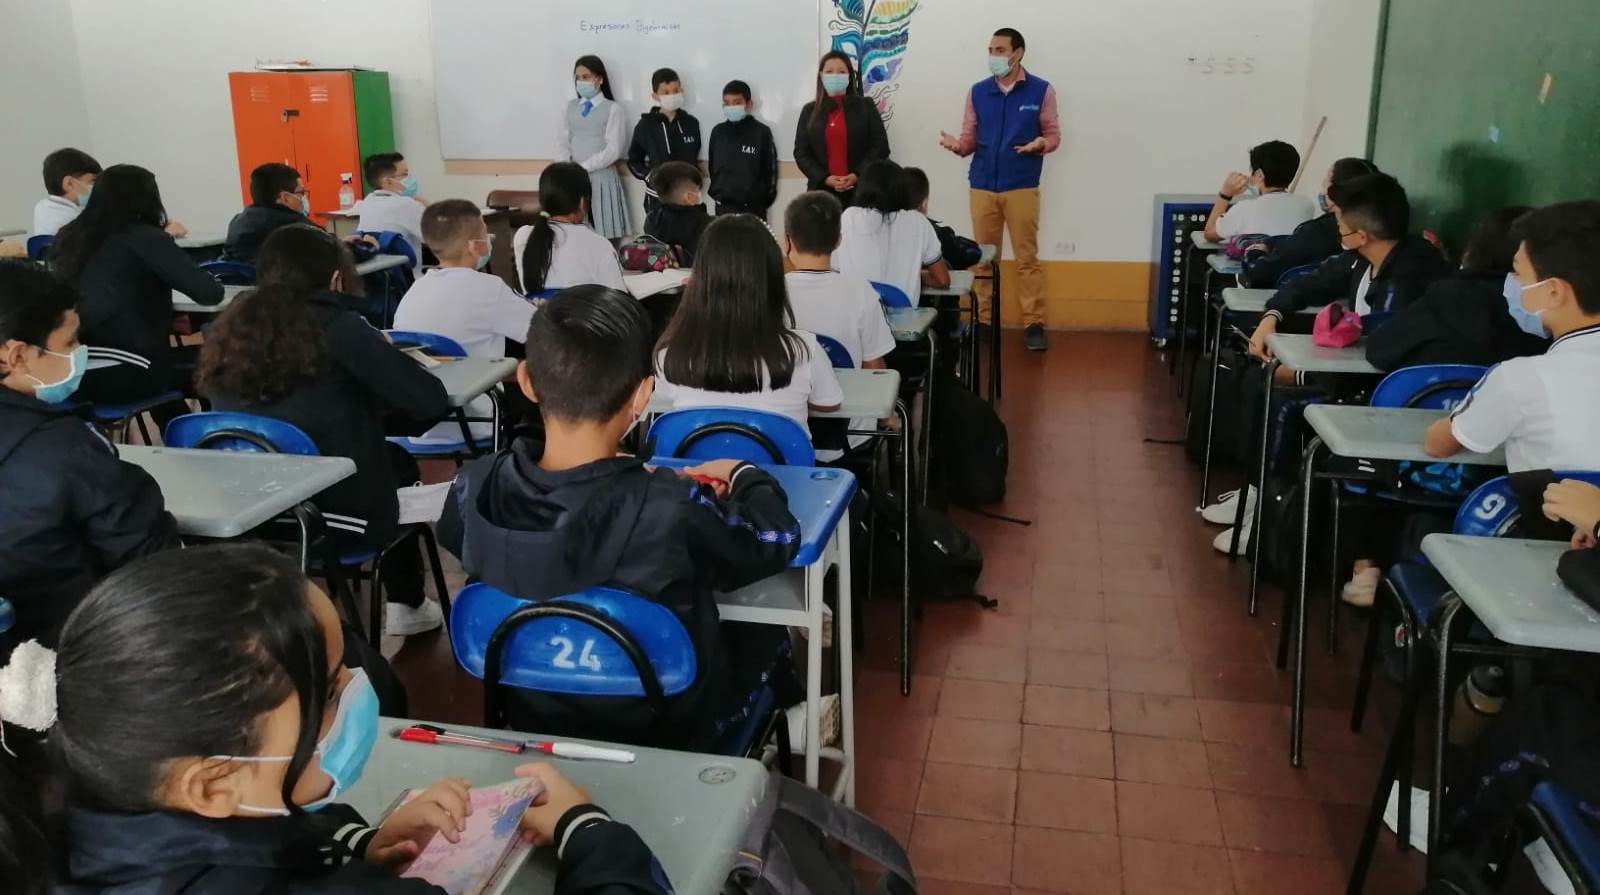 Jaime Vizcaíno visita una institución educativa de Fusagasugá